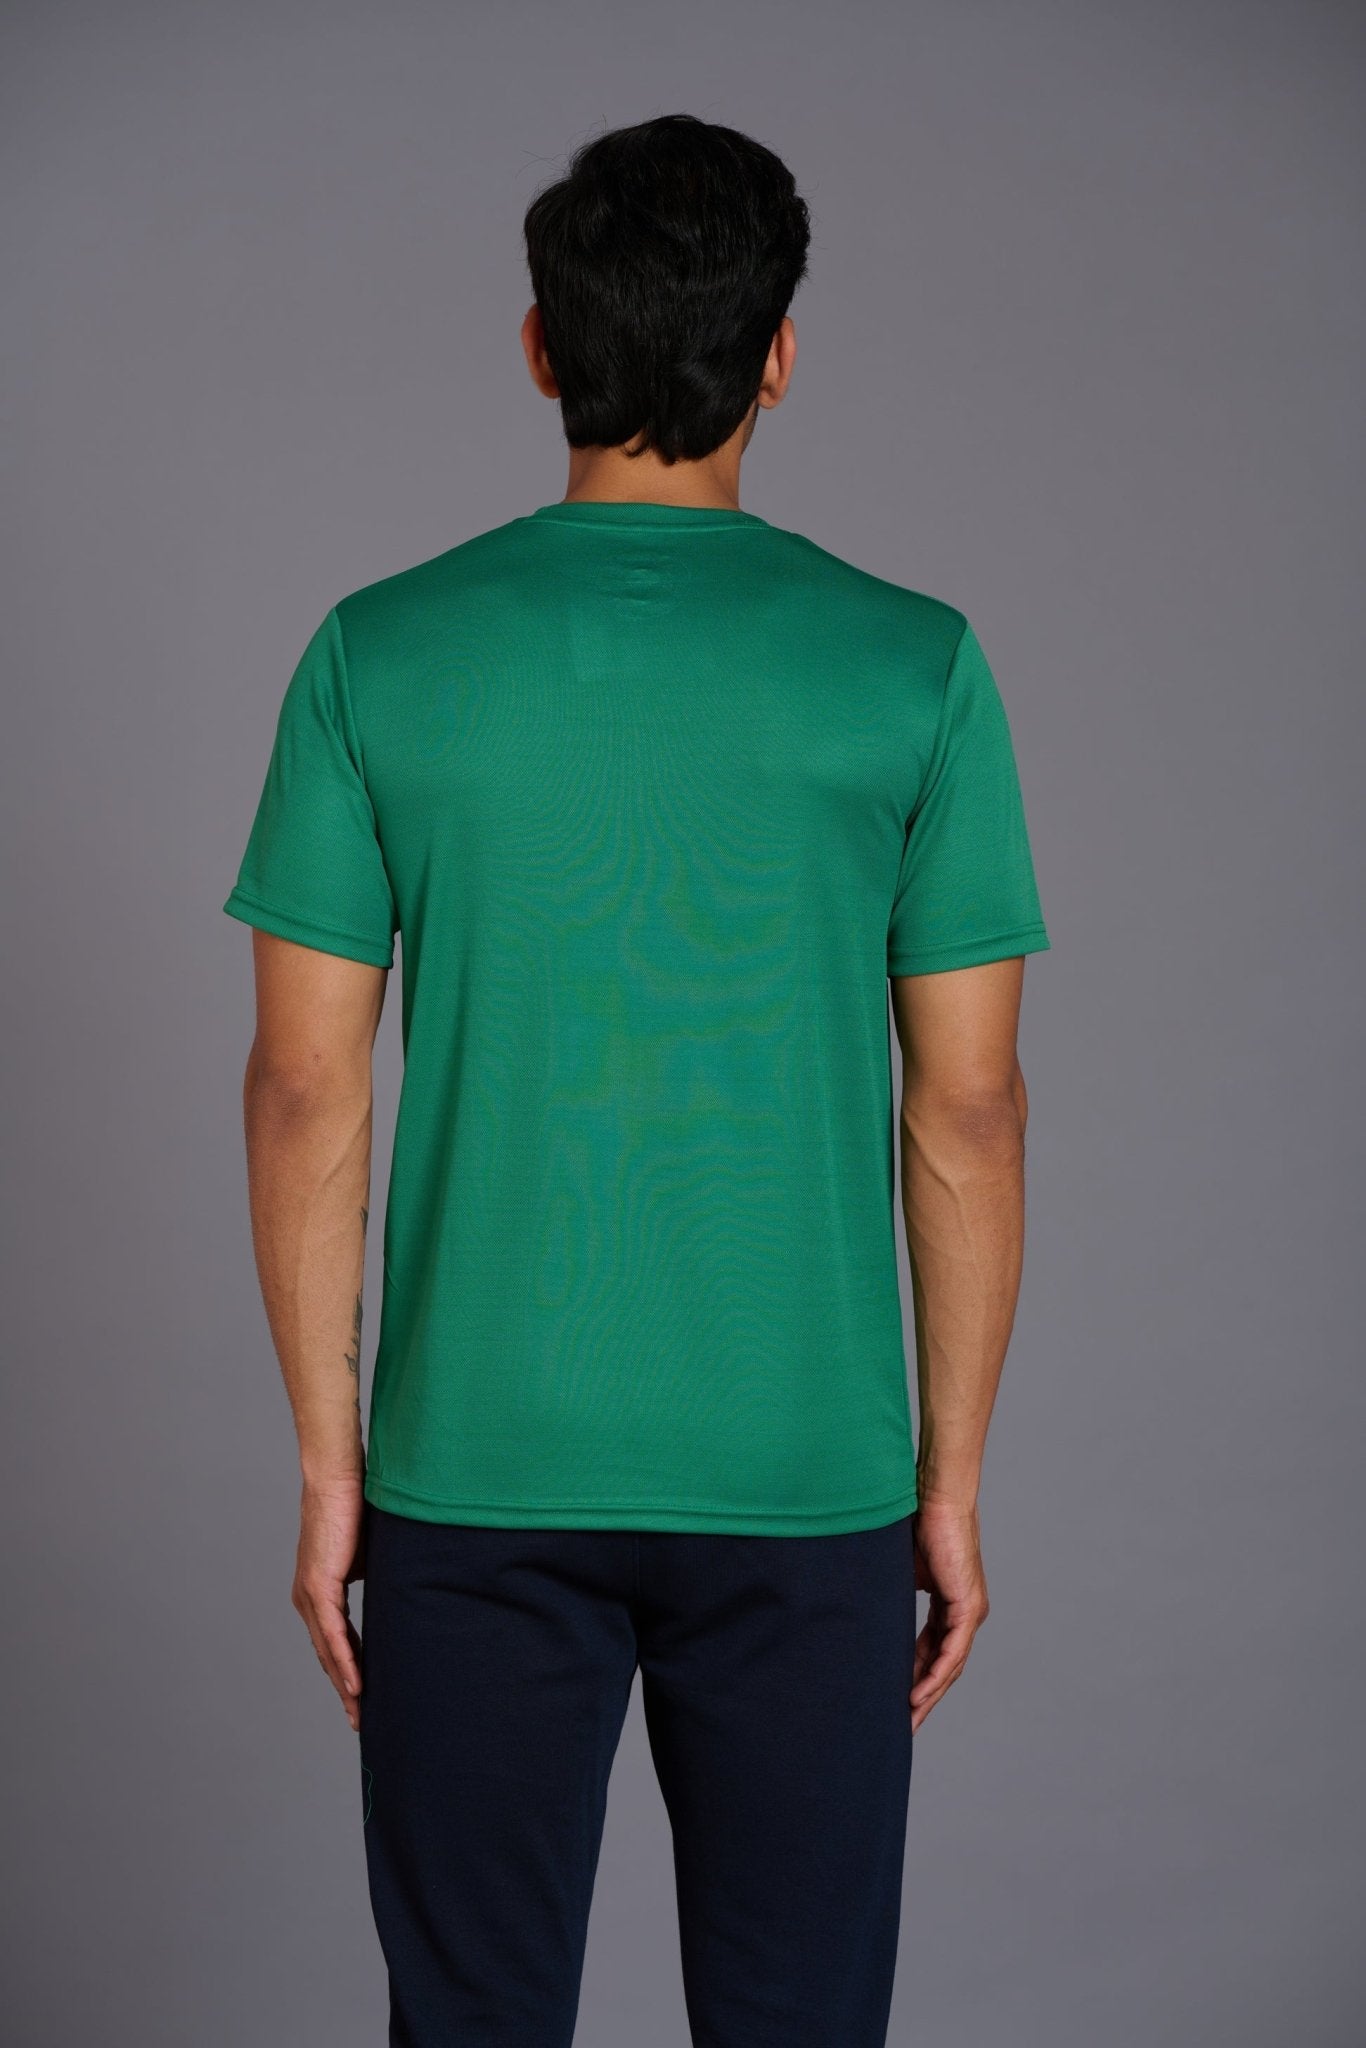 Warrior Green T-Shirt for Men - Go Devil